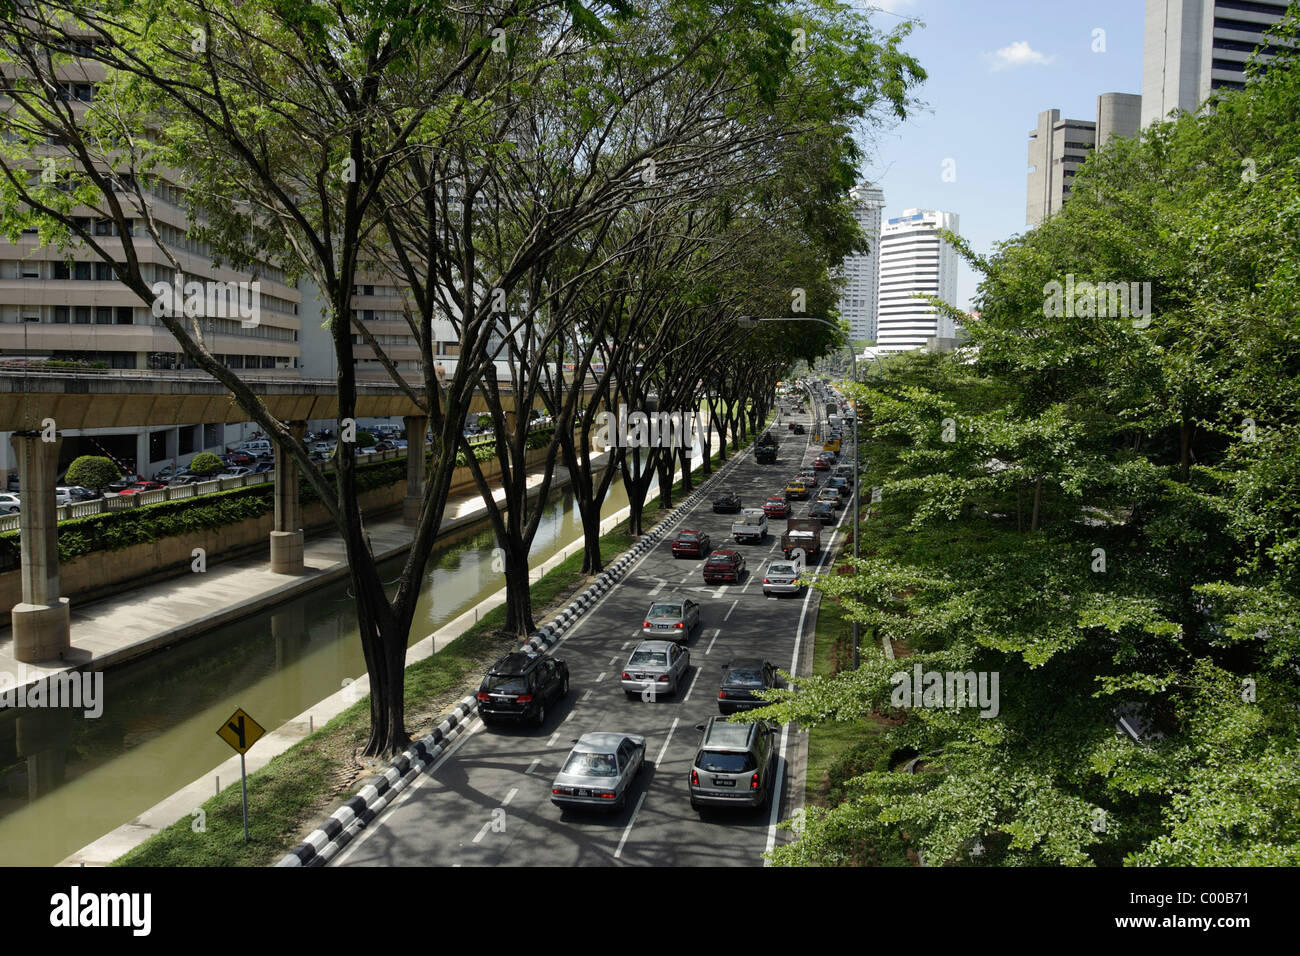 Tree lined street in Kuala Lumpur, Malaysia Stock Photo